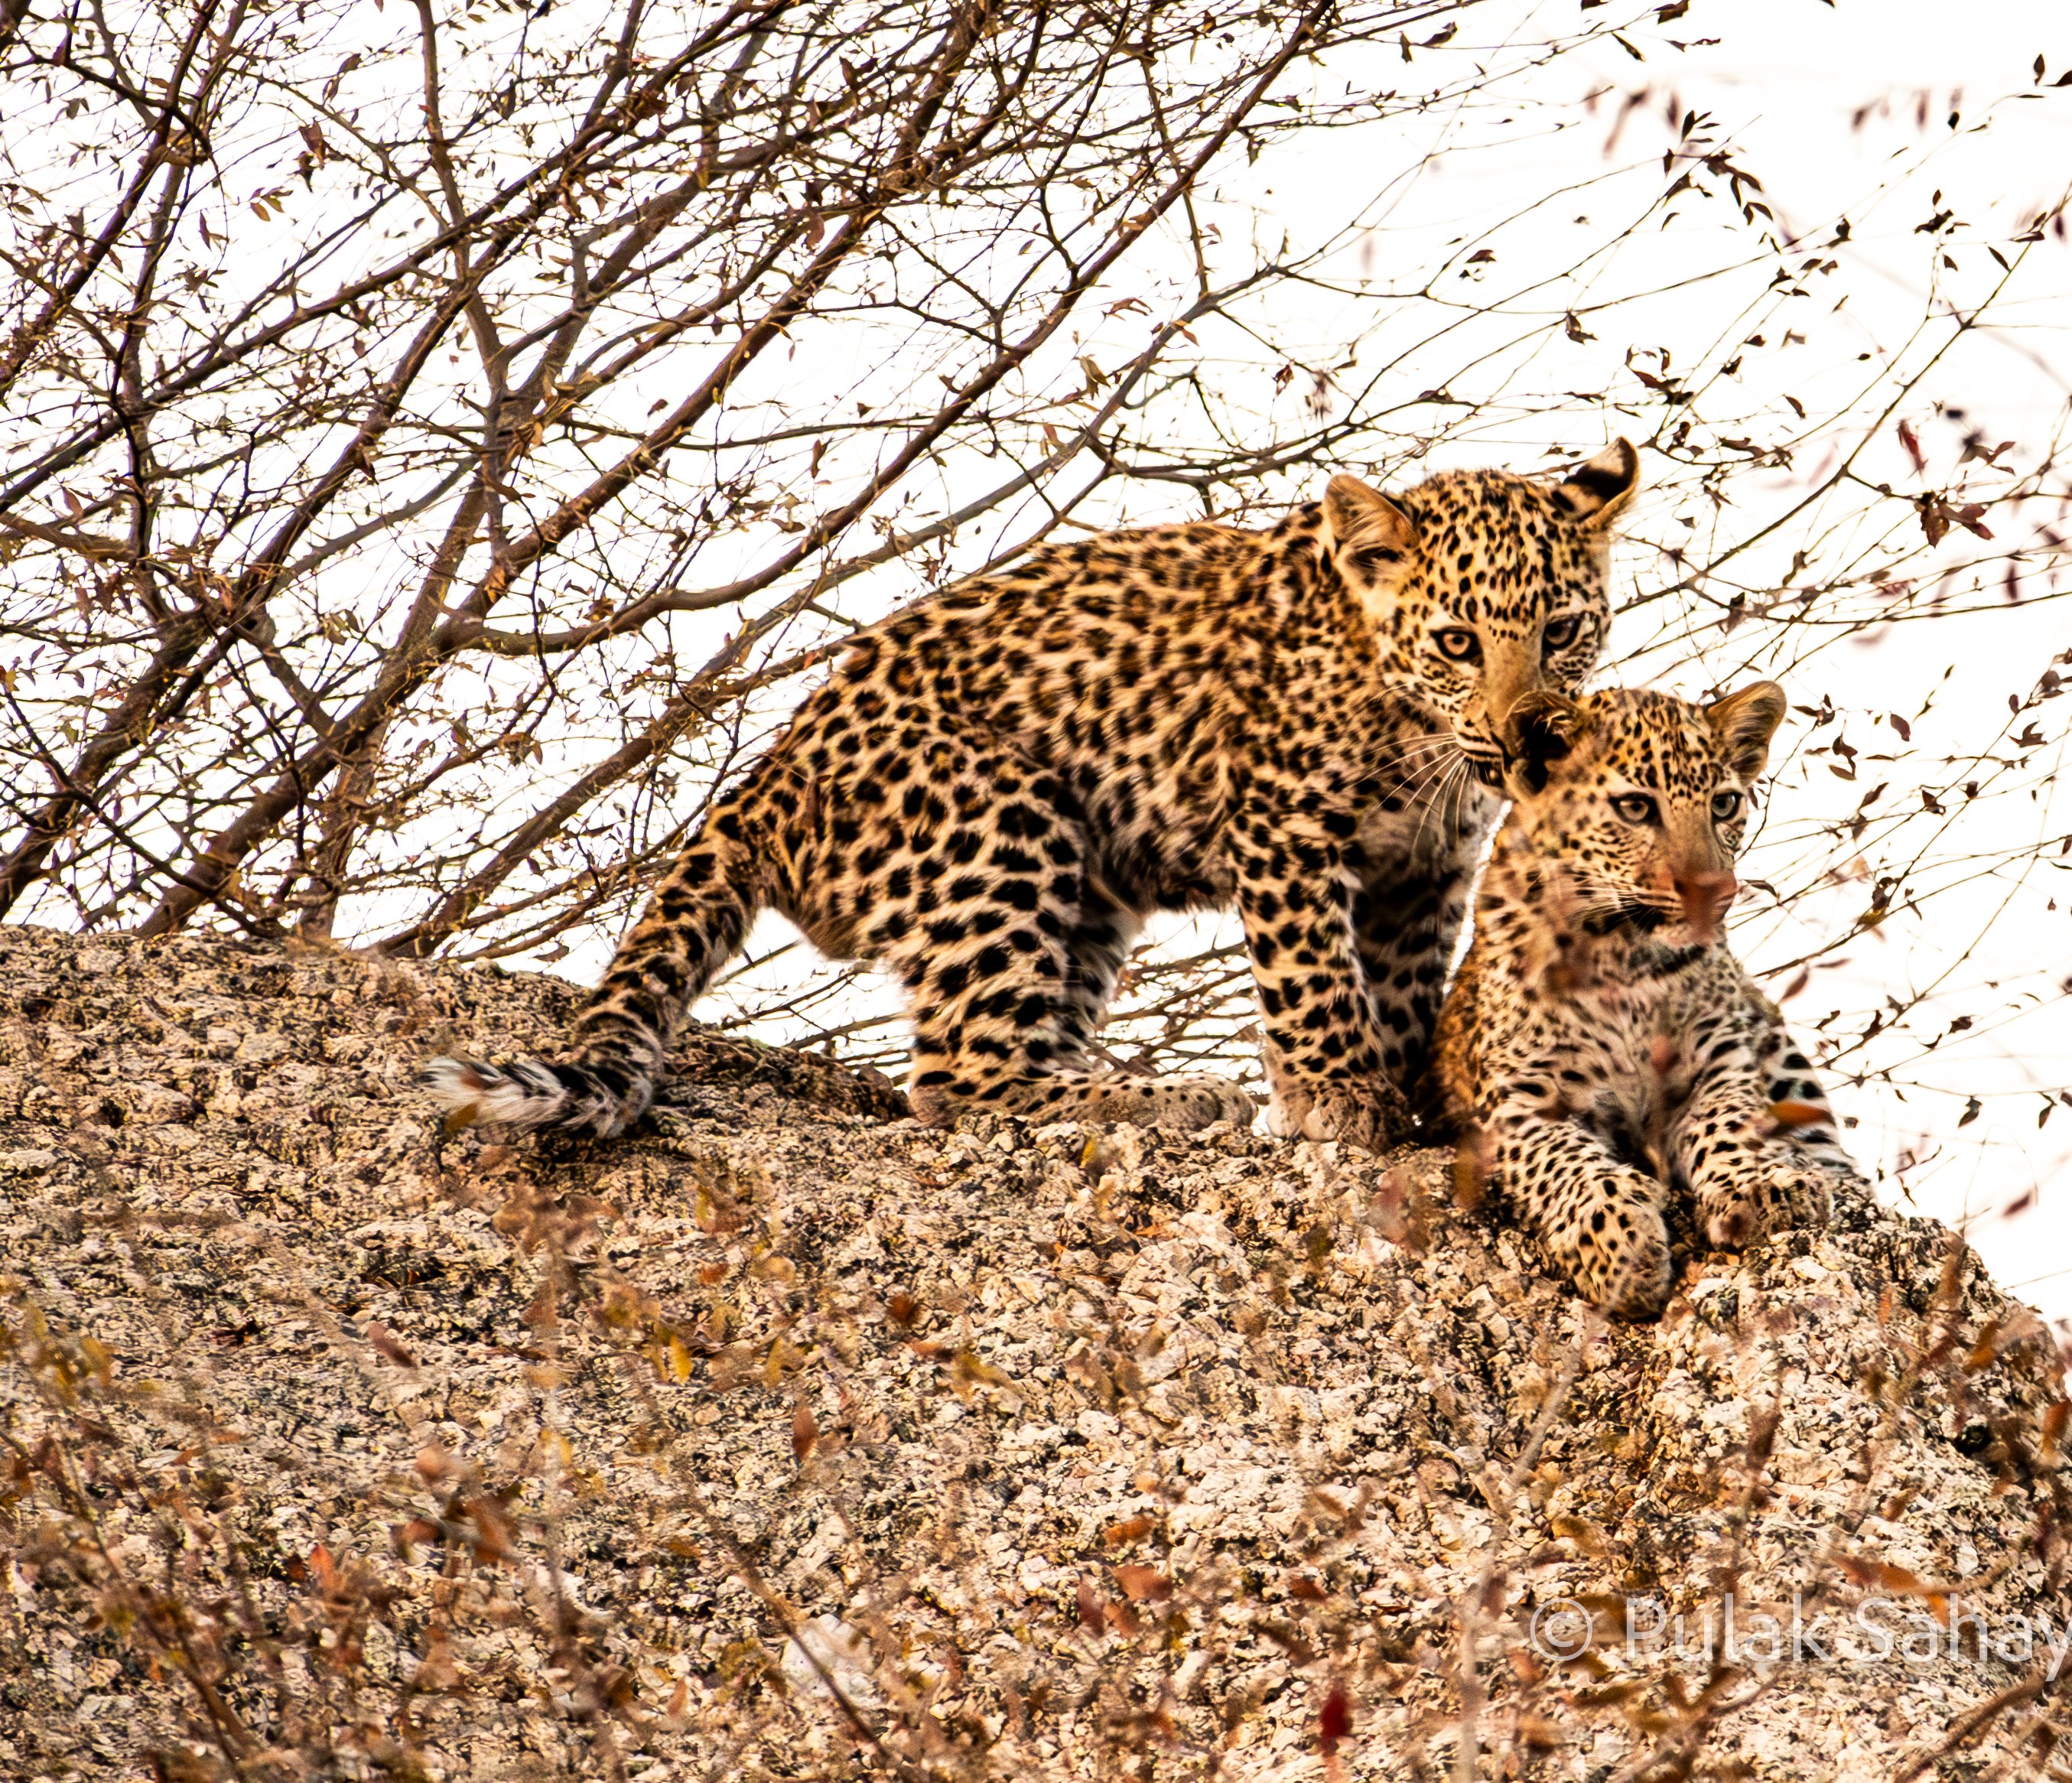 Leopard cub ear bending